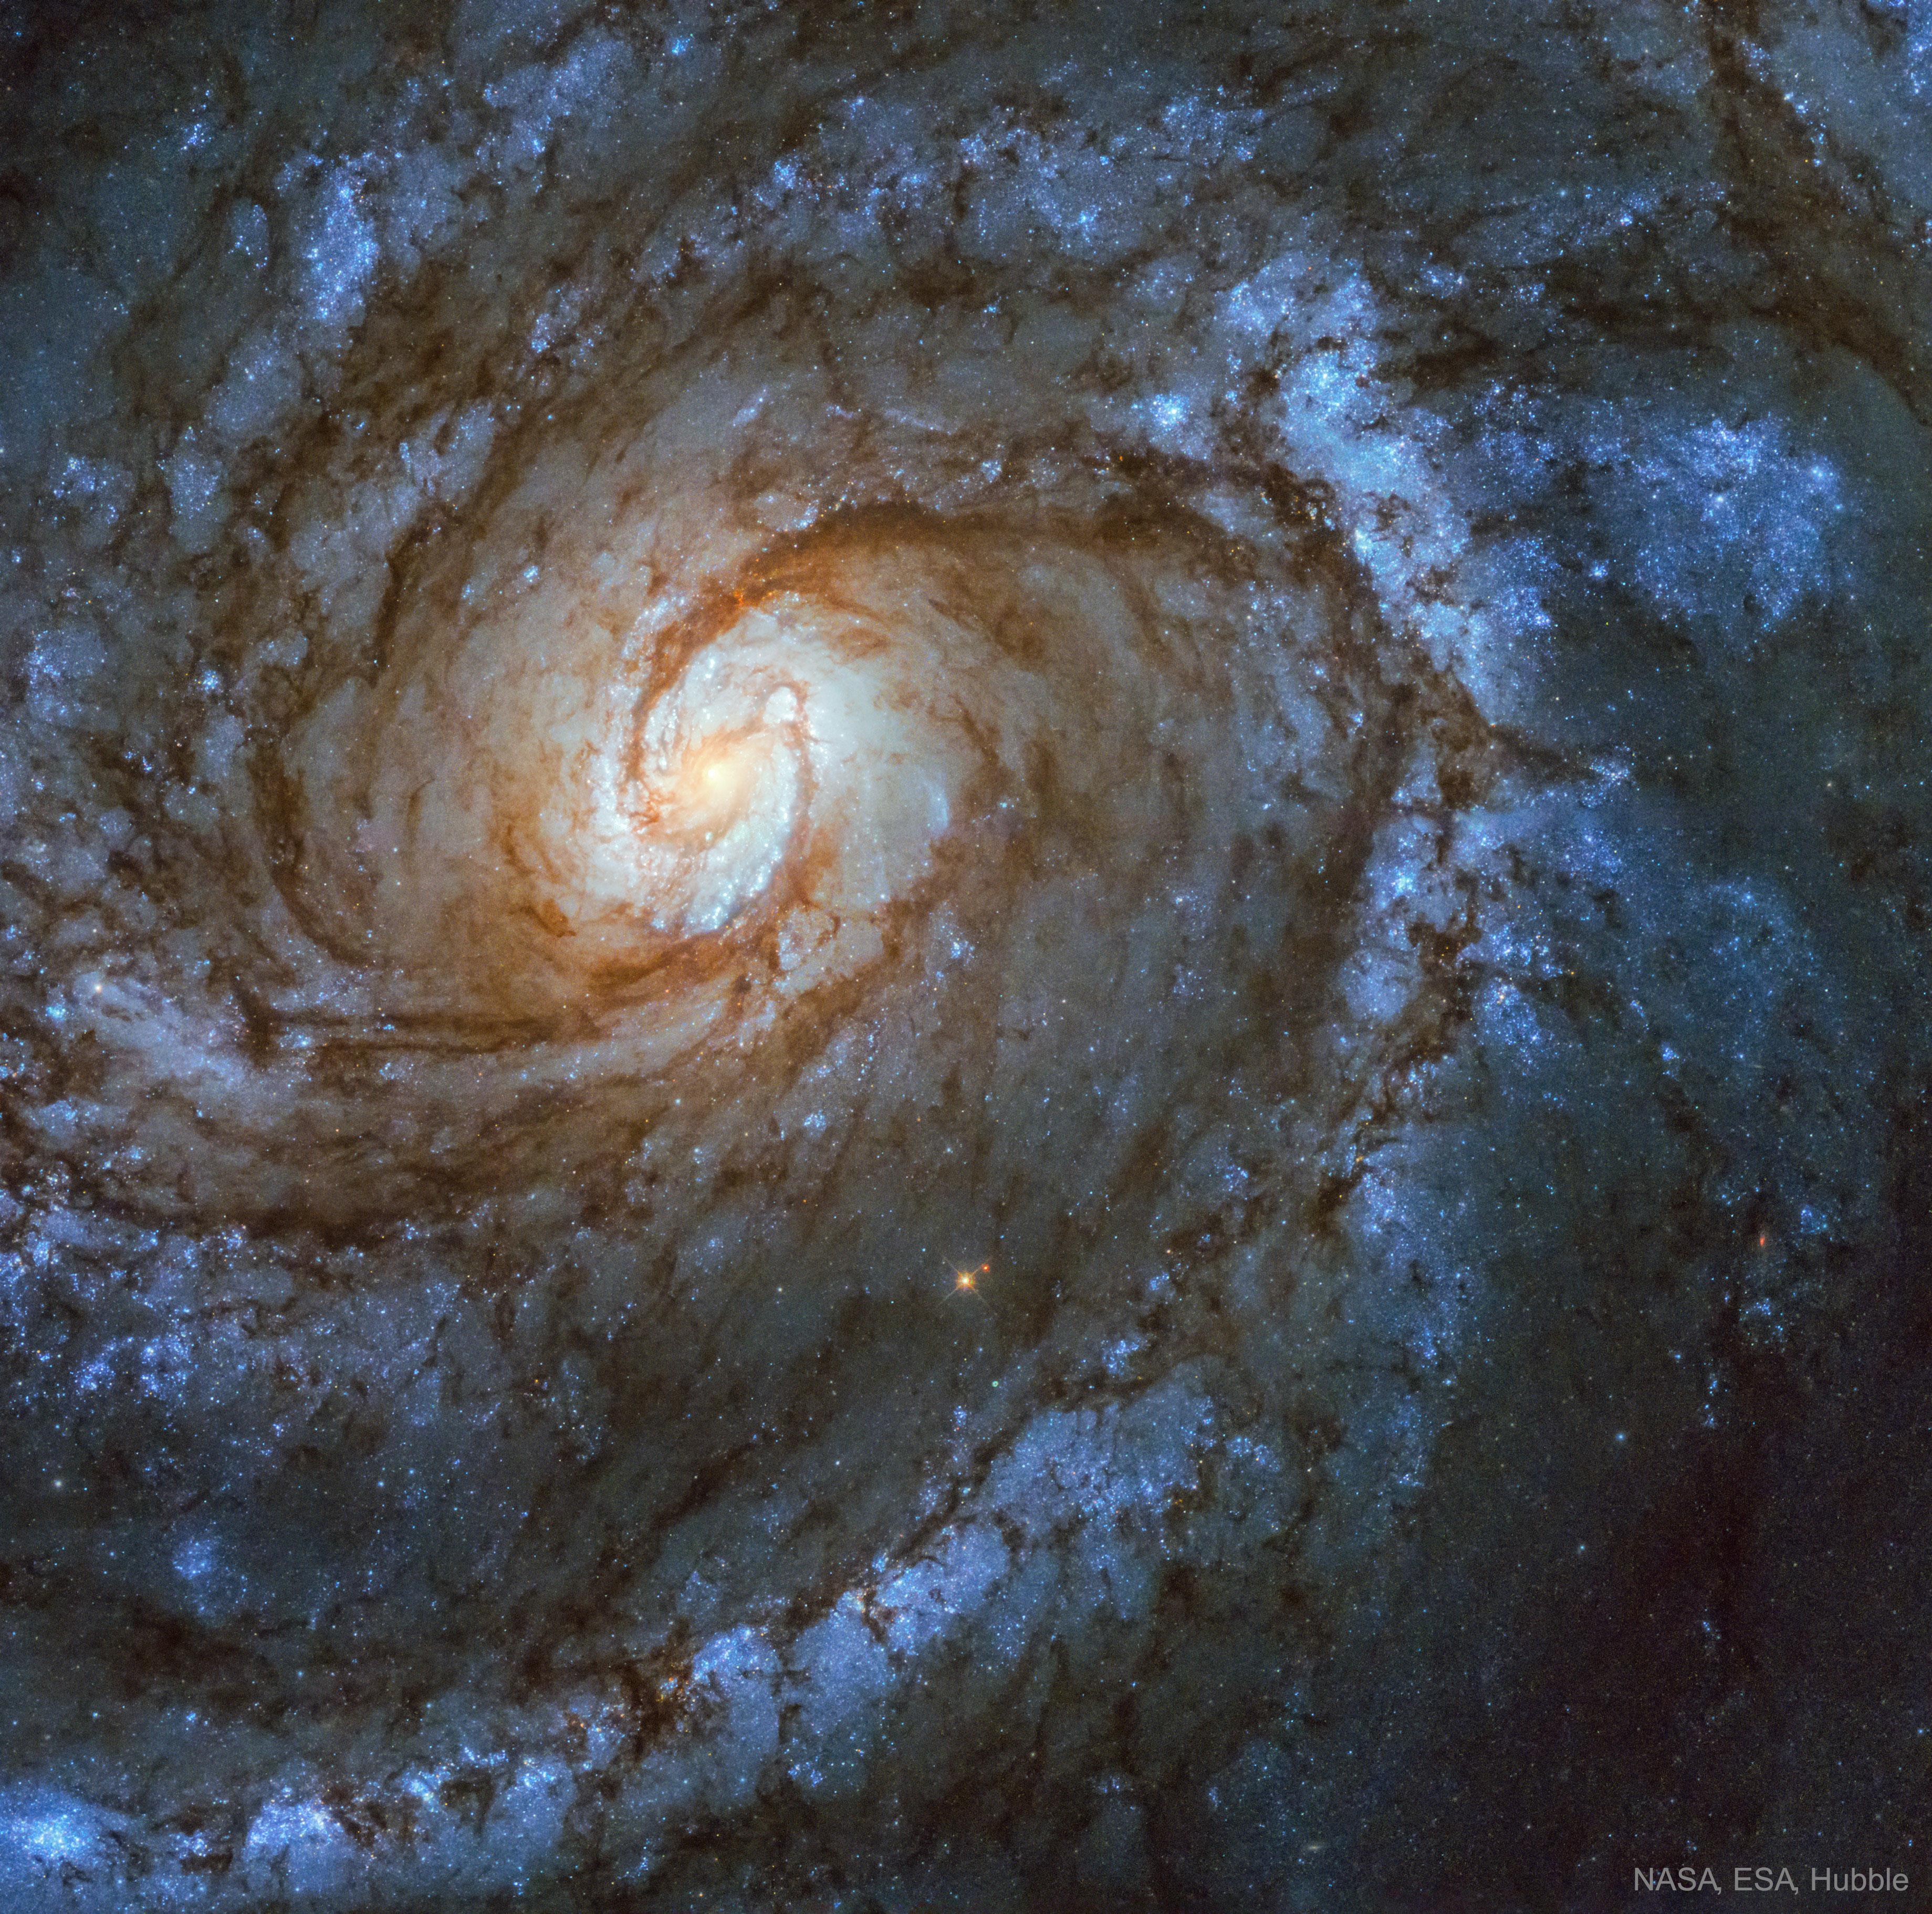 مجرّة حلزونيّة بأذرع حلزونيّة تُهيمن عليها النجوم الزرقاء ومع دوّامة مركزيّة ساطعة تبدو بحدّ ذاتها كمجرّة حلزونيّة.